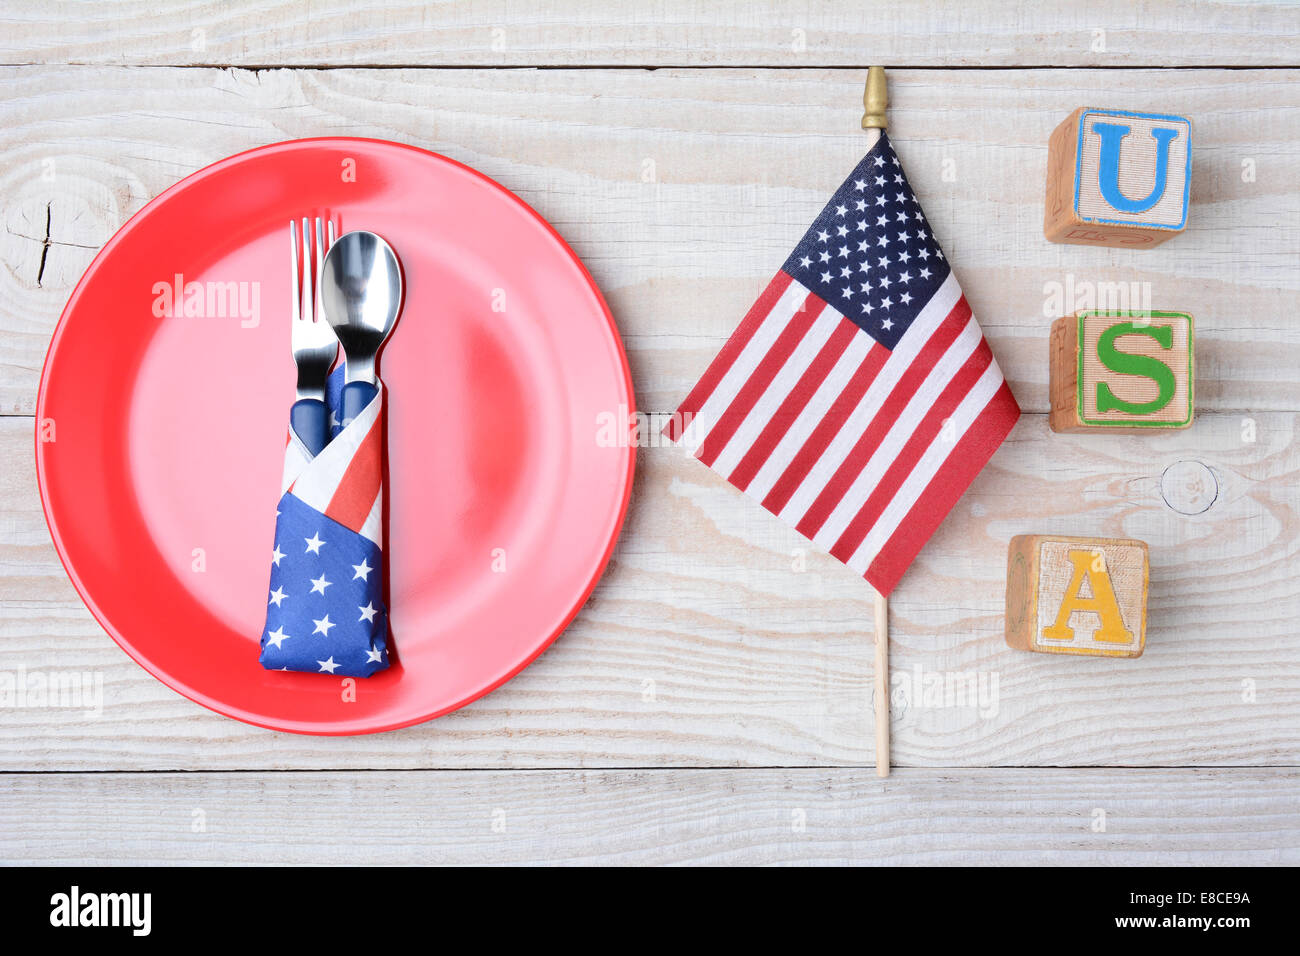 Un tavolo da picnic pronto per un quarto di luglio del picnic. Una targhetta rossa con cucchiaio e forchetta, bandiera americana e blocca la compitazione USA. Foto Stock